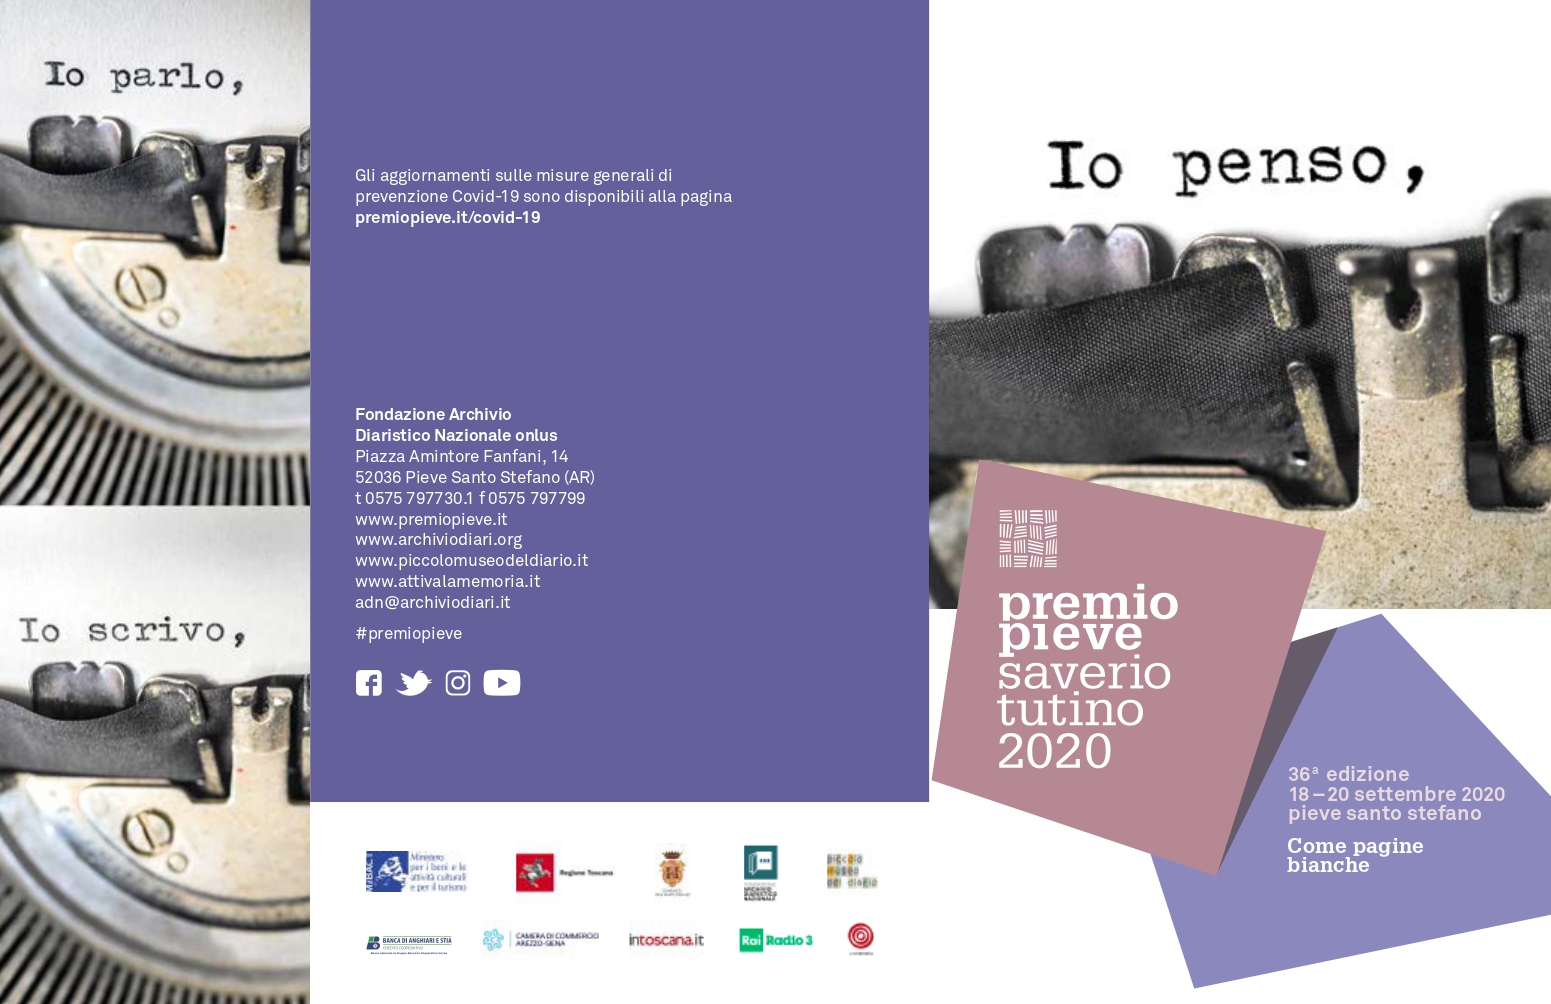 Fondazione Archivio Diaristico Nazionale, “Come pagine bianche” 36° Premio Pieve Saverio Tutino